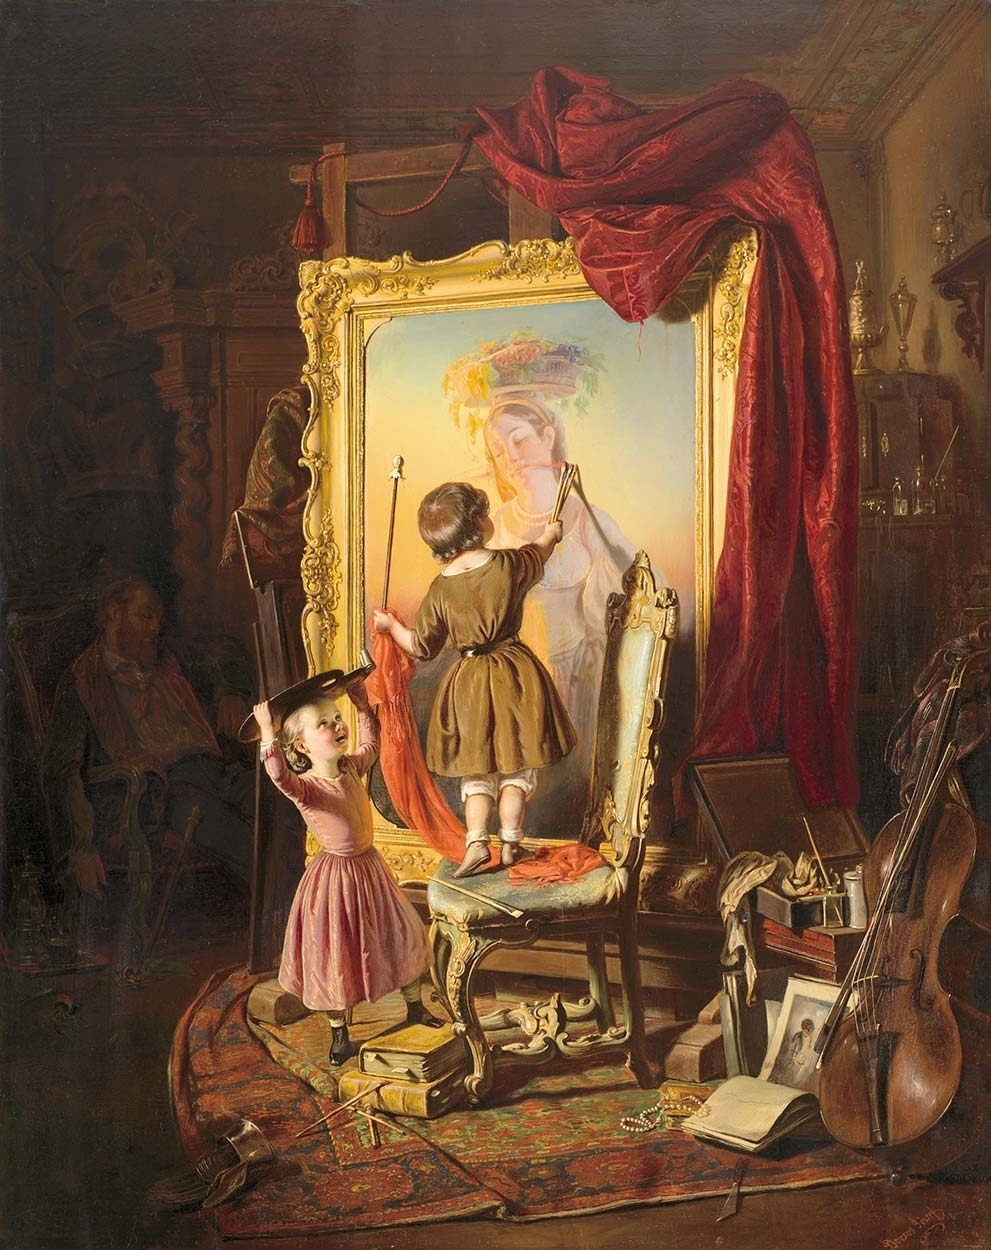 Borsos József (1821-1883) The Painter's Dream (Little Painter, Garage in the Studio, Little Artist, Studio), 1851